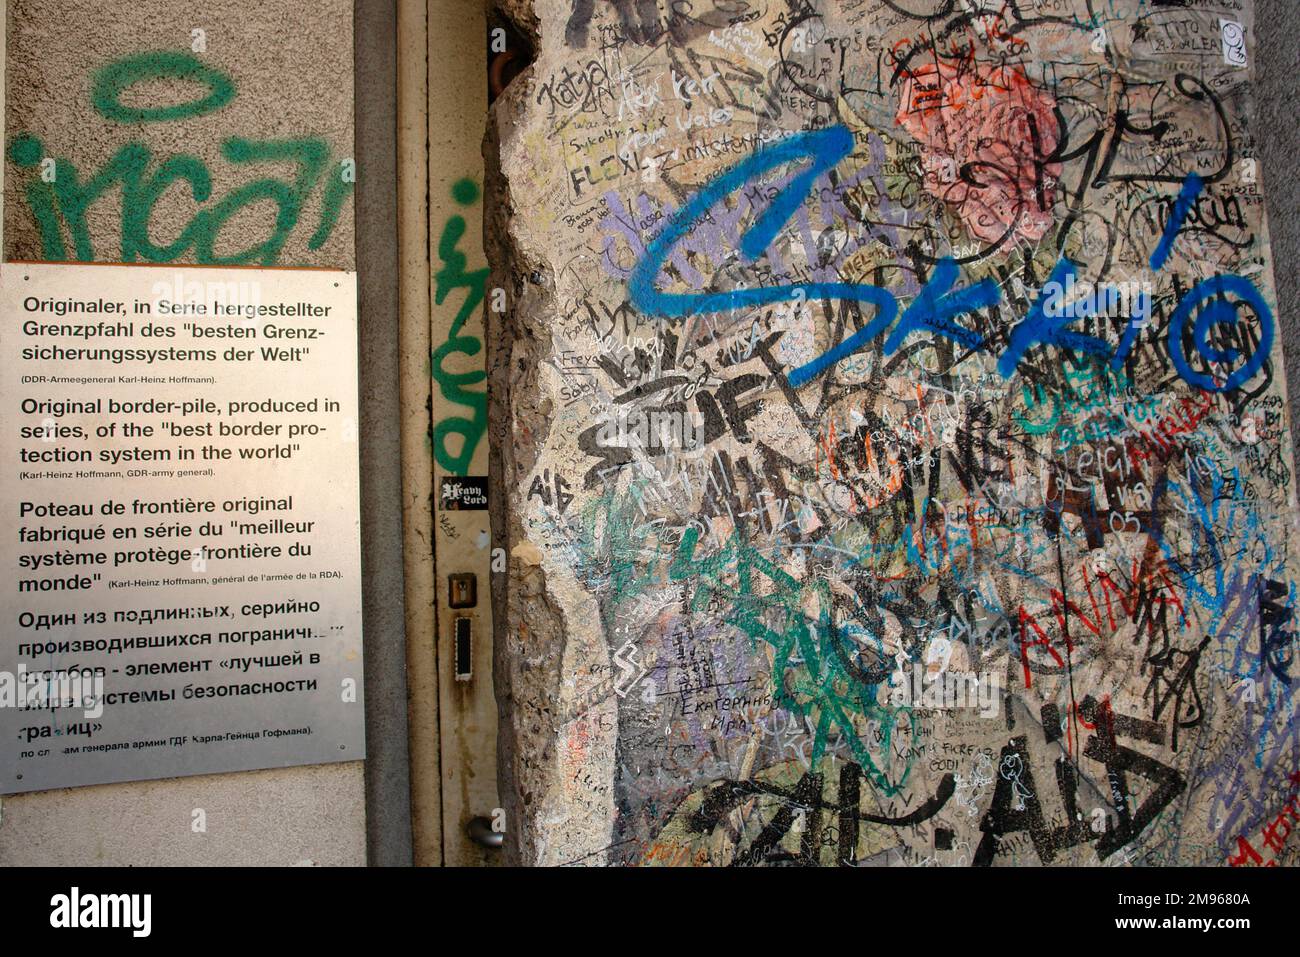 Teil der mit Graffiti bedeckten Berliner Mauer, ausgestellt im Checkpoint Charlie Museum in der Friedrichstraße, Berlin. Stockfoto